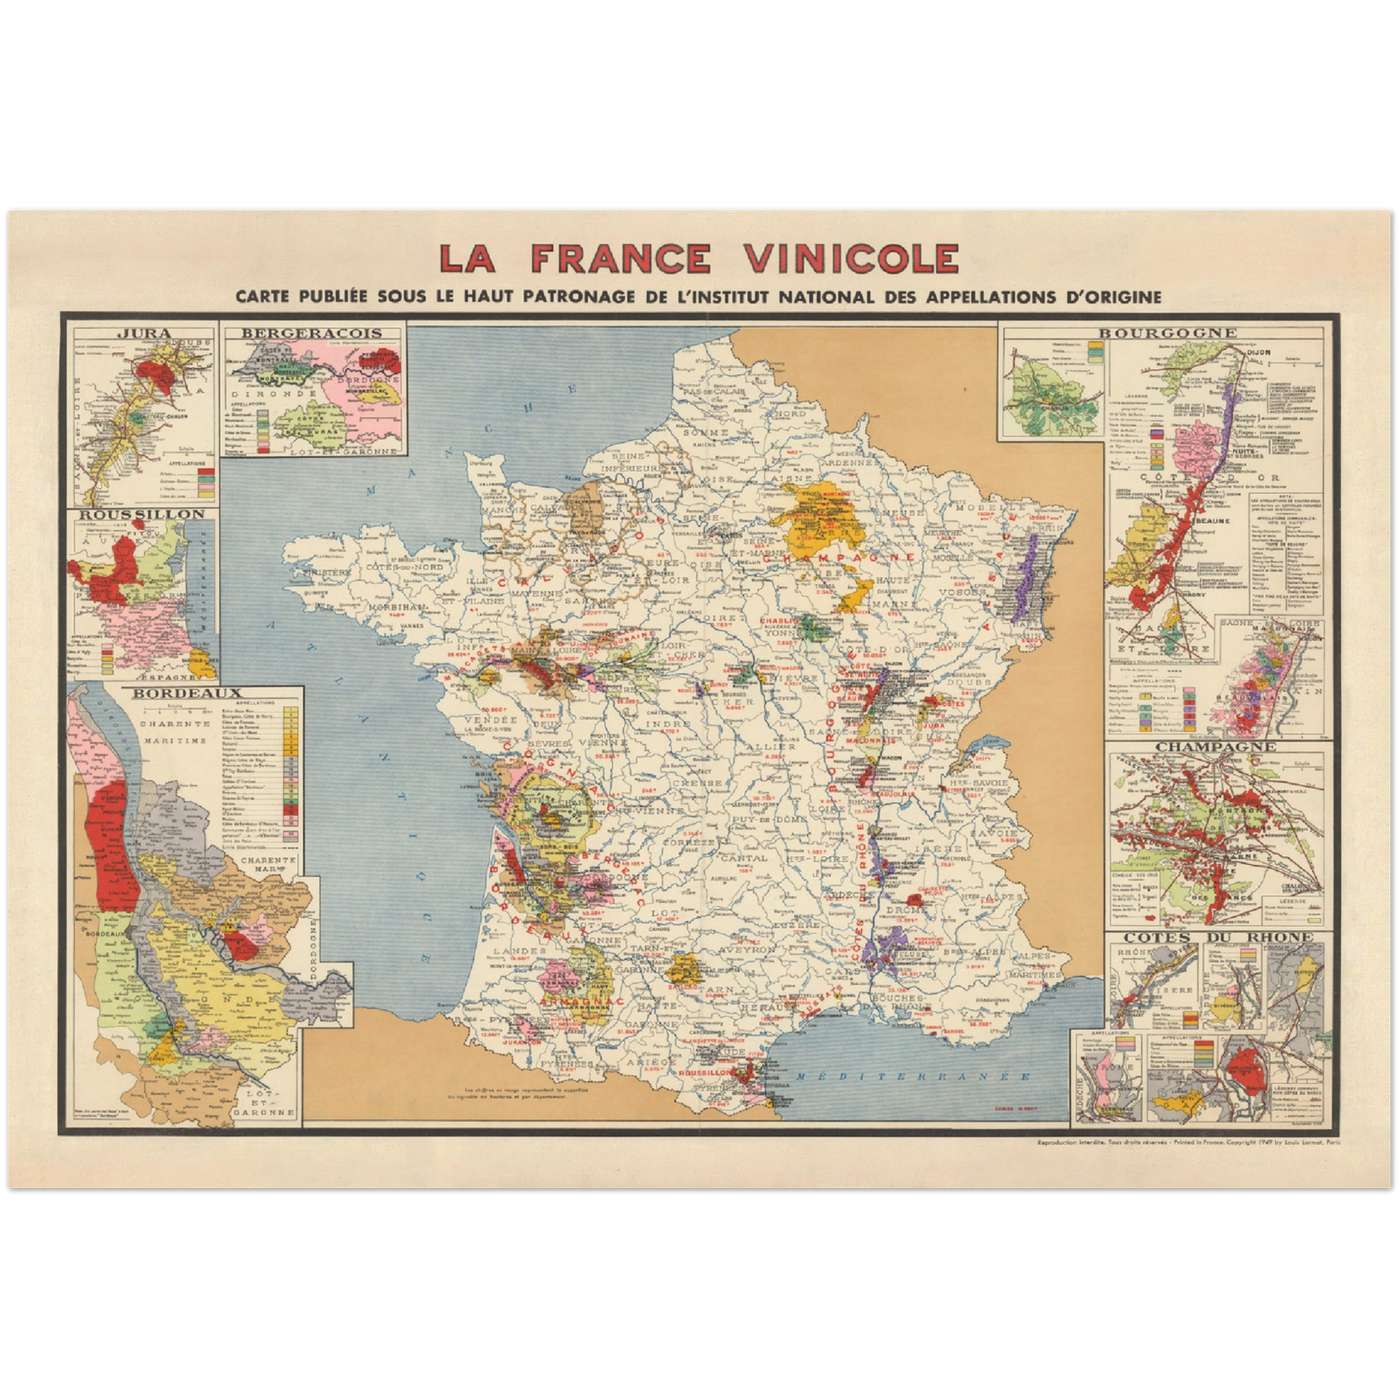 Alte Karte der Weinberge in Frankreich "La France Vinicole", 1939 - Bordeaux, Bourgogne, Champagne, Cotes Du Rhone, Bergeracois